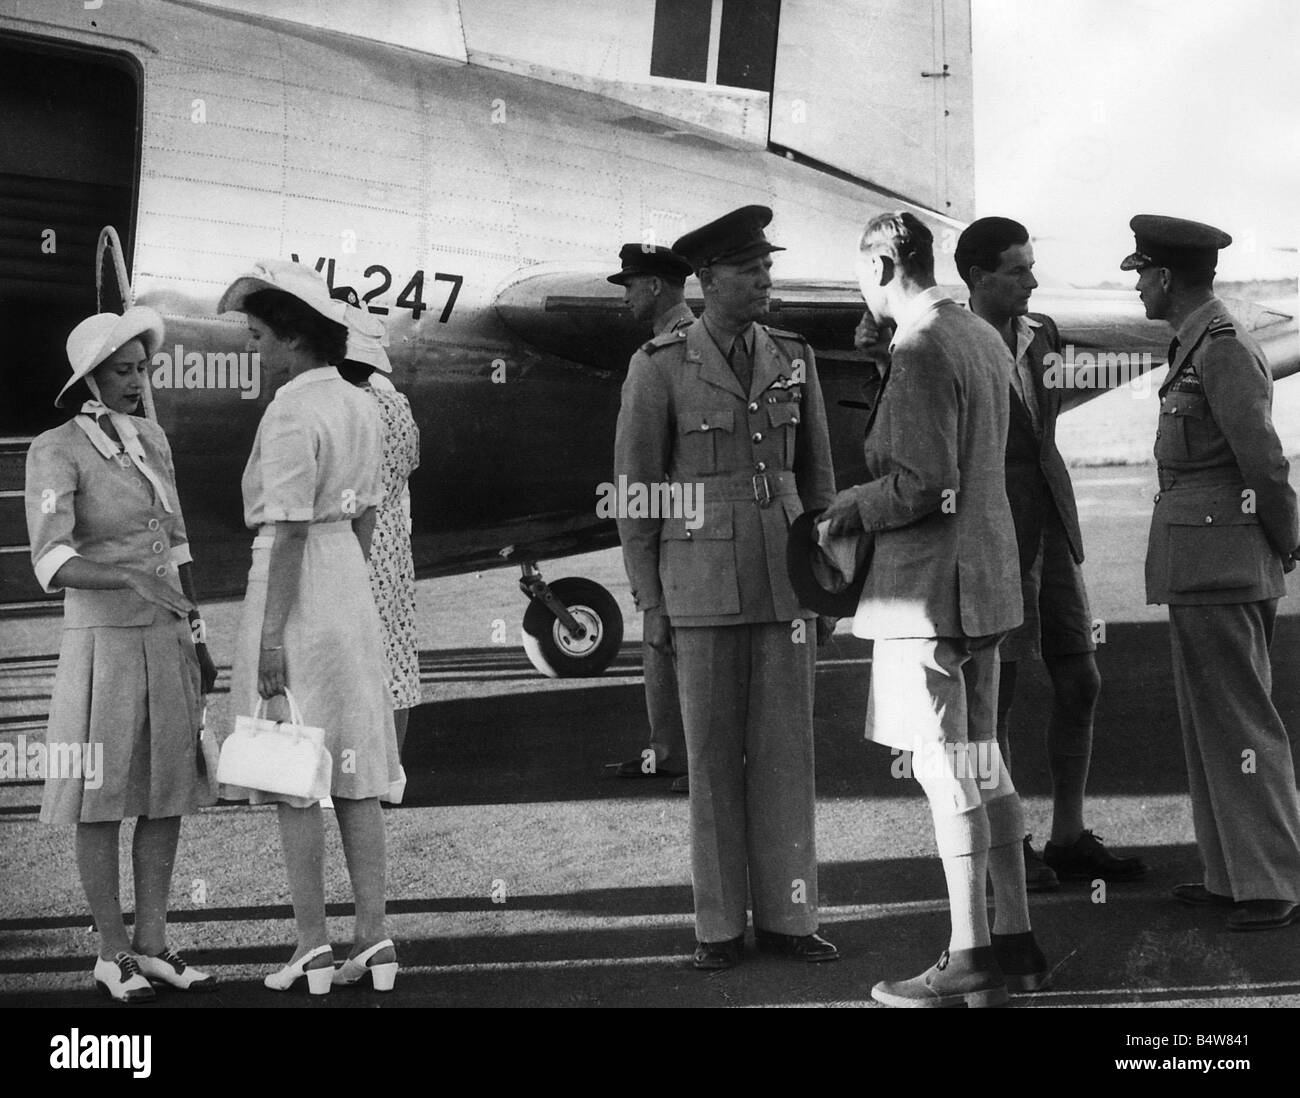 El rey George VI usar pantalones cortos Princesa Elizabeth Princess Margaret y grupo capitán Peter Townsend en pantalones cortos a su llegada al aeródromo de Bloemfontein durante el recorrido real de Sudáfrica de noviembre de 1947 Foto de stock